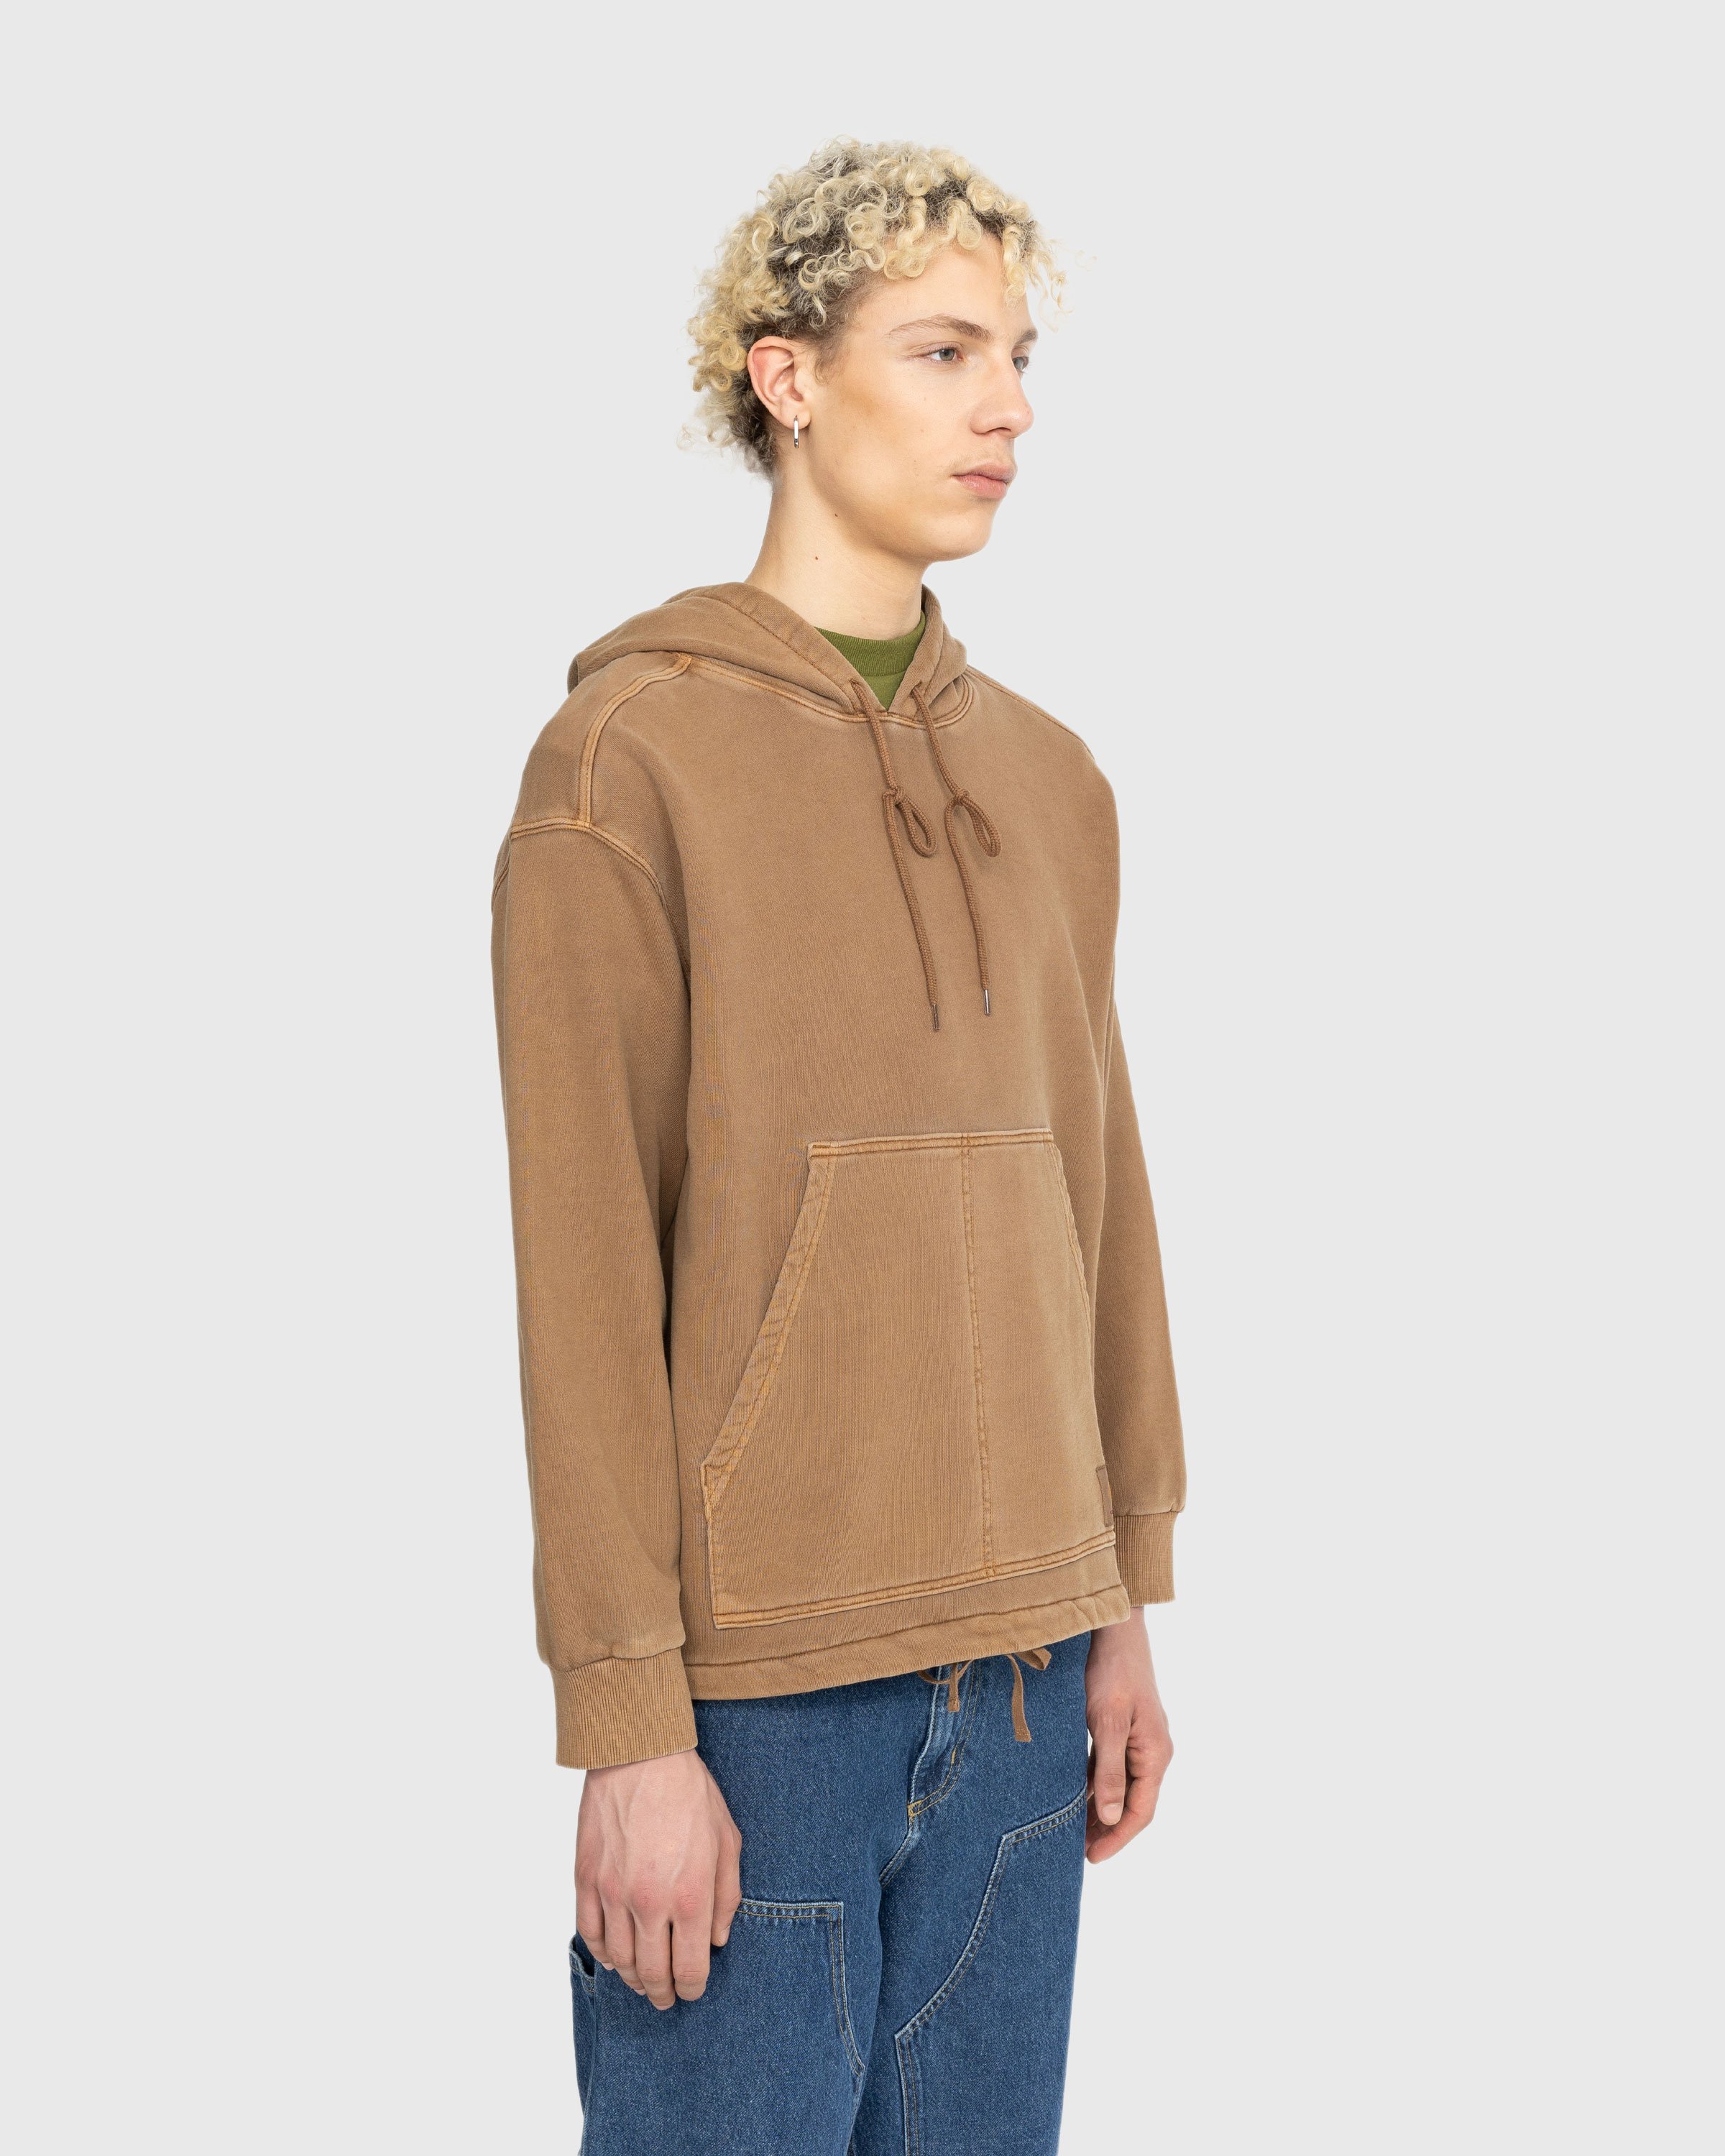 Carhartt WIP - Arling Hoodie Garment-Dyed Tamarind - Clothing - Brown - Image 4